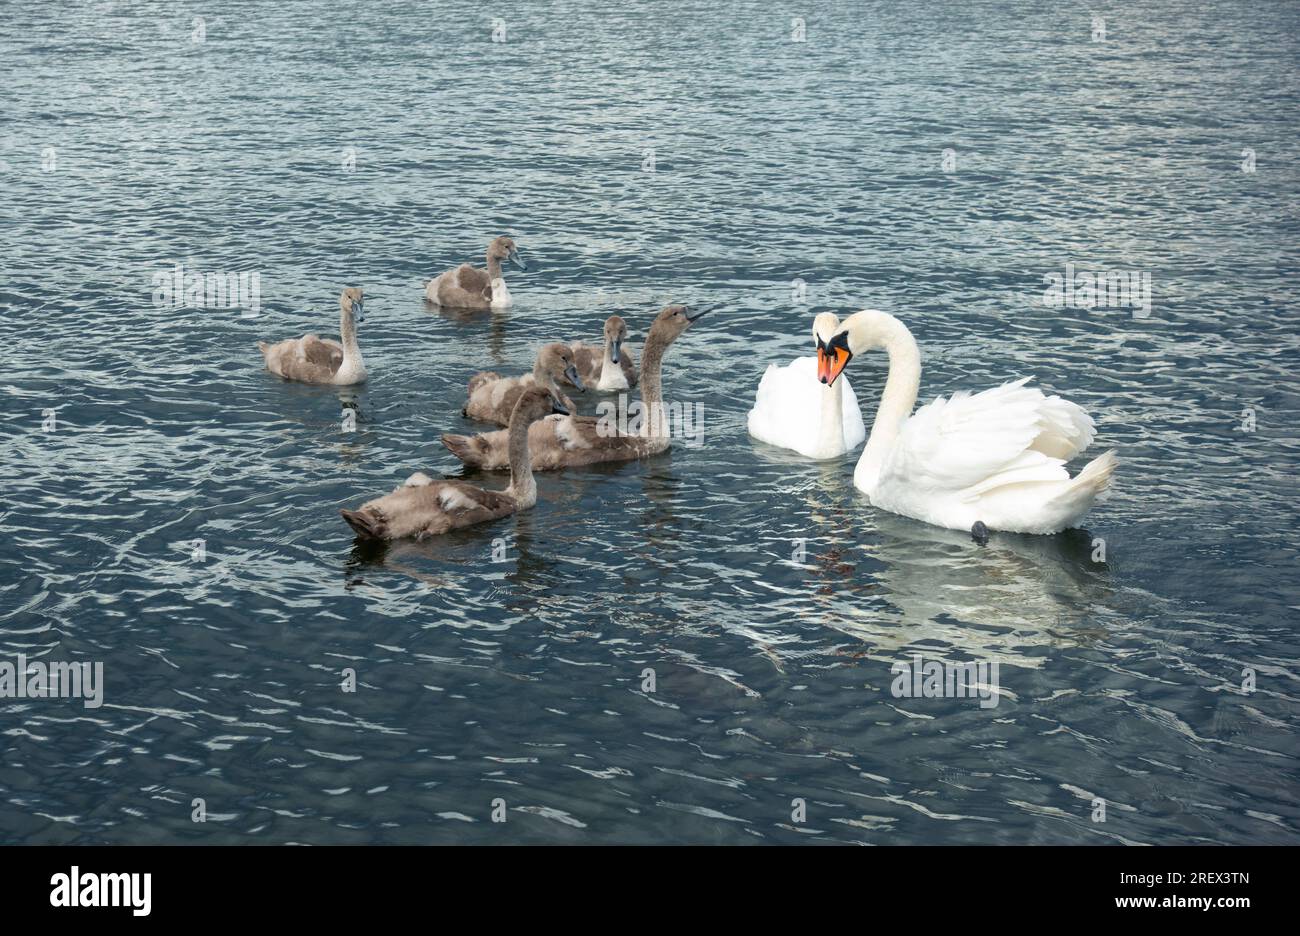 Coppia di cigni bianchi muti come orgogliosi genitori che proteggono i loro cigni (cigni per bambini) in acqua blu come concetto di valori familiari Foto Stock